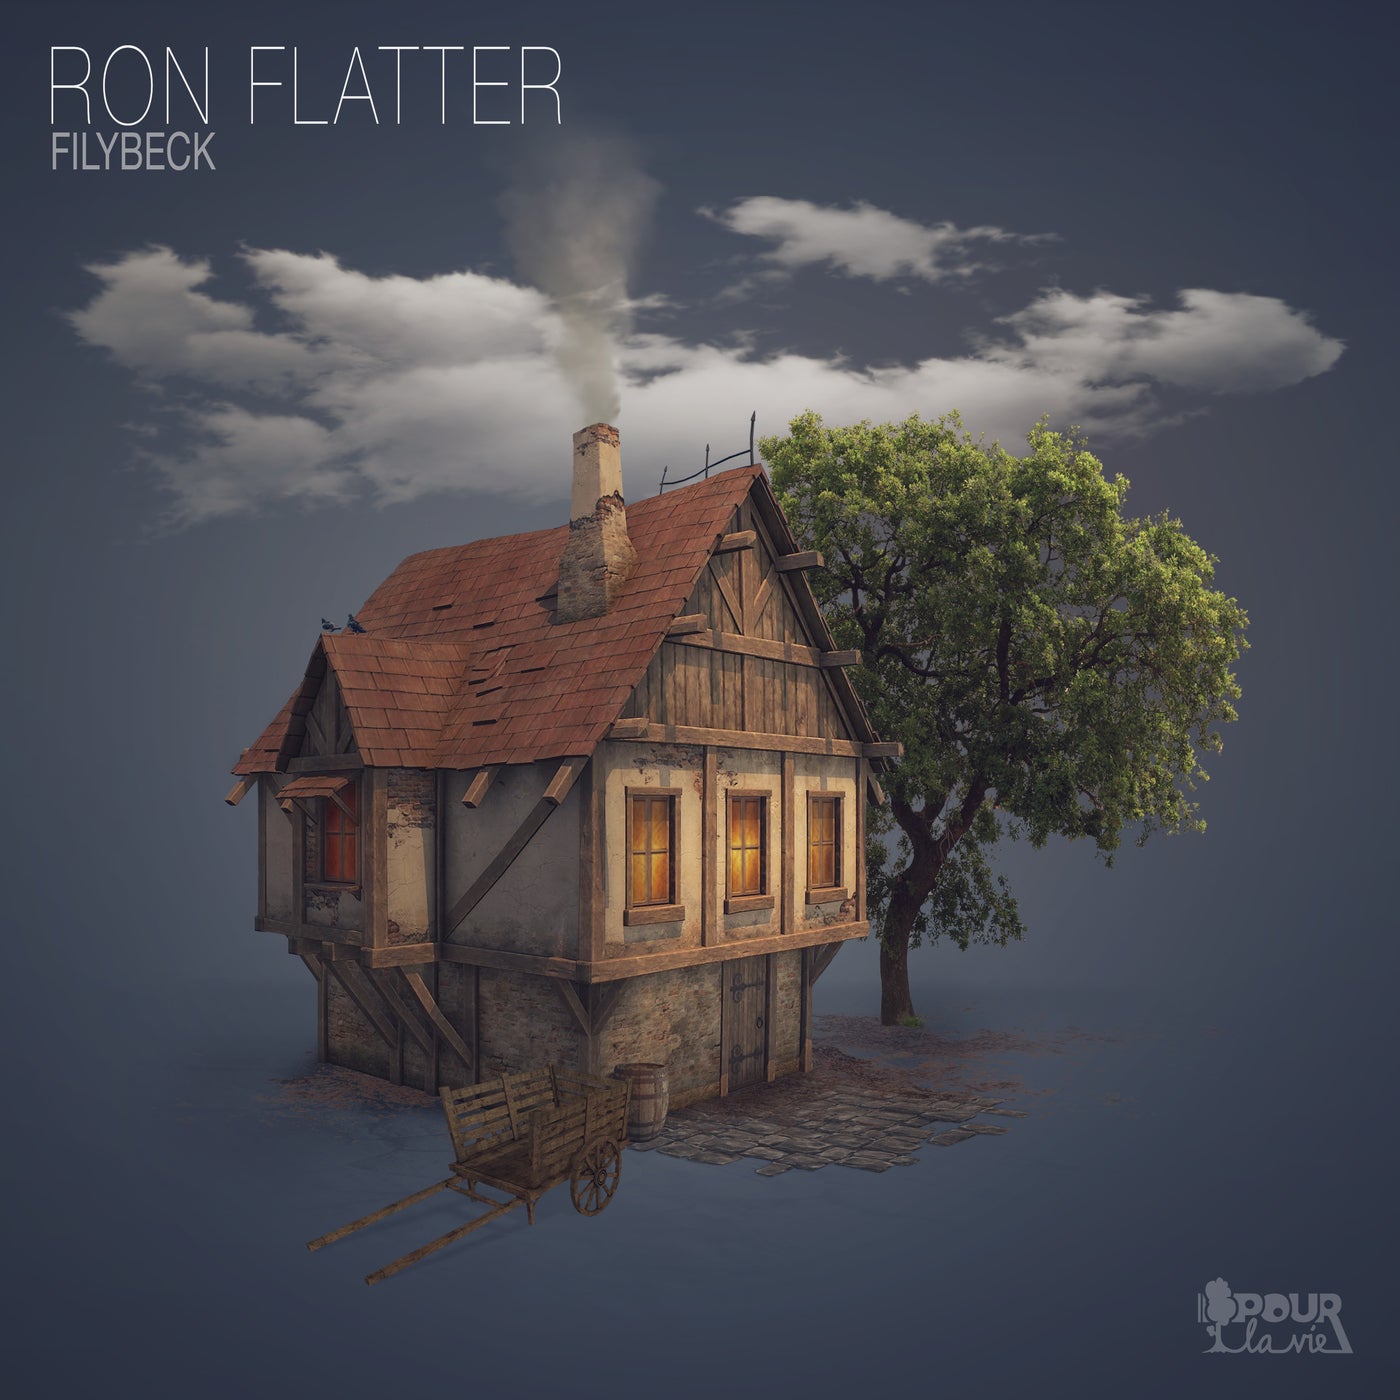 Ron Flatter - Filybeck [PLV47]